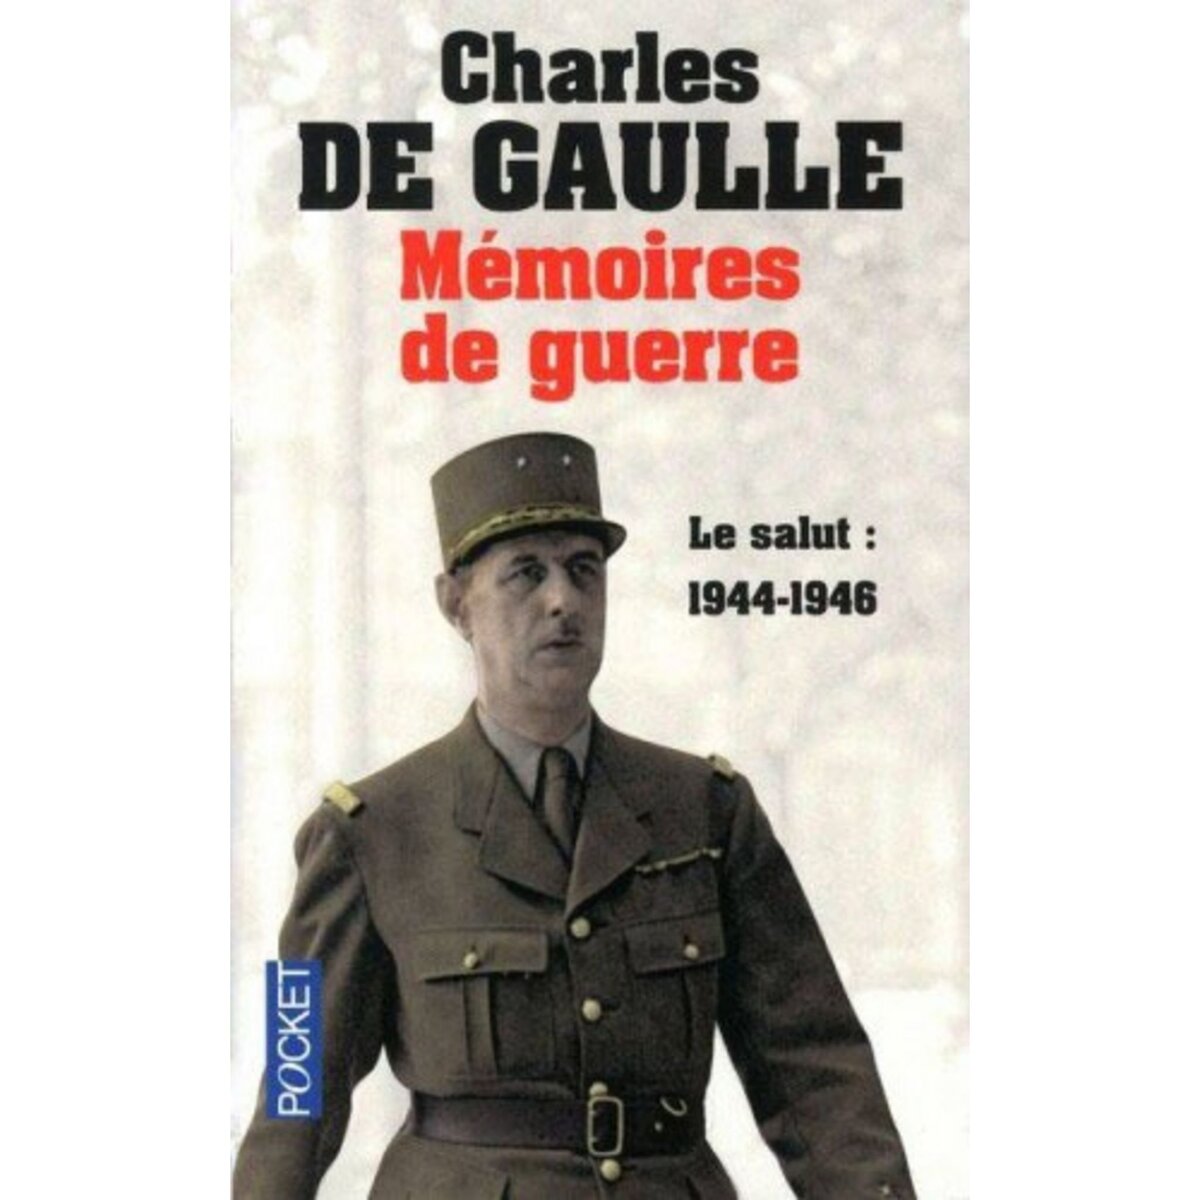  MEMOIRES DE GUERRE. TOME 3, LE SALUT 1944-1946, Gaulle Charles de